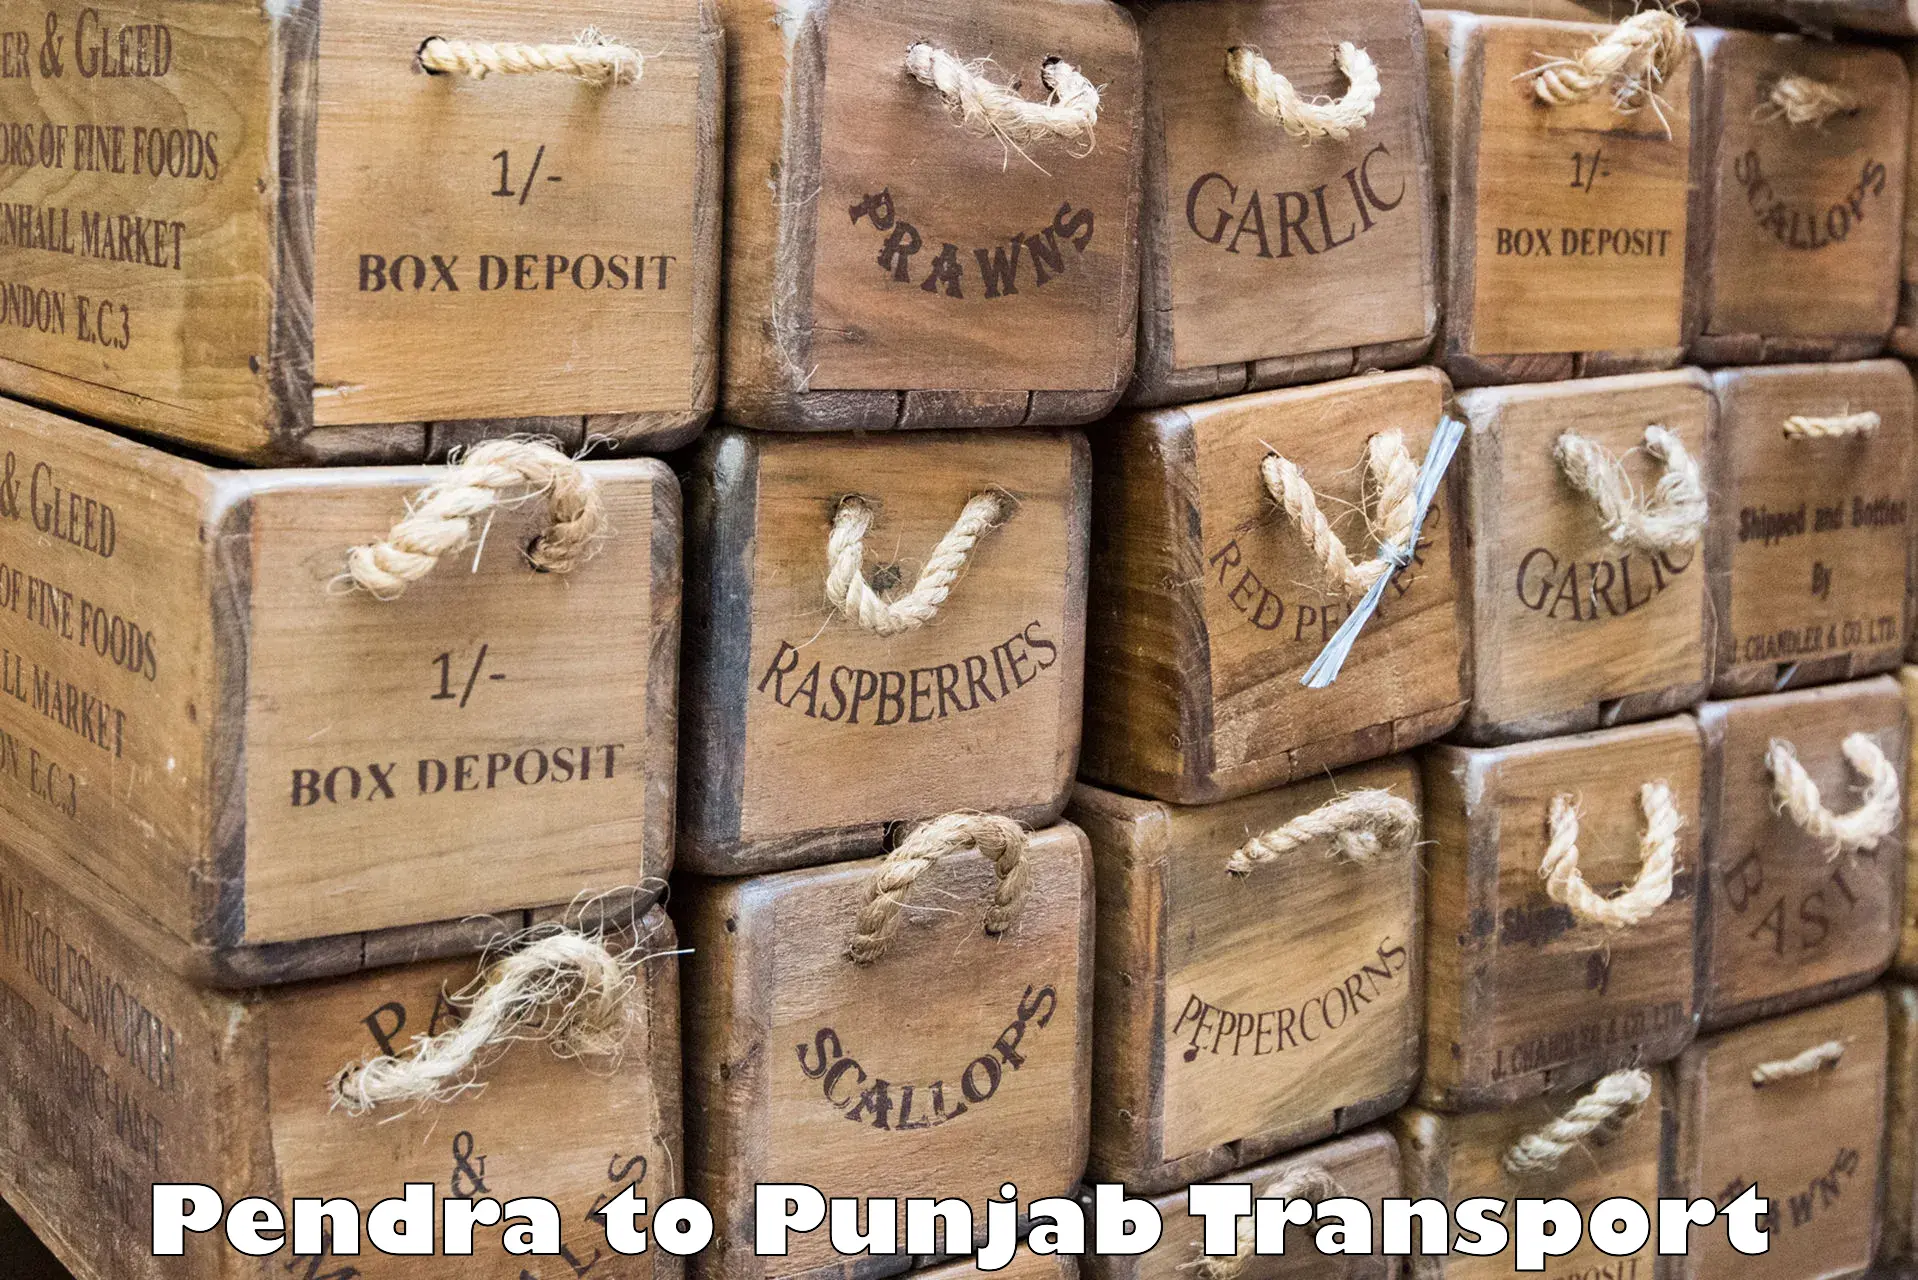 Air cargo transport services Pendra to Samana